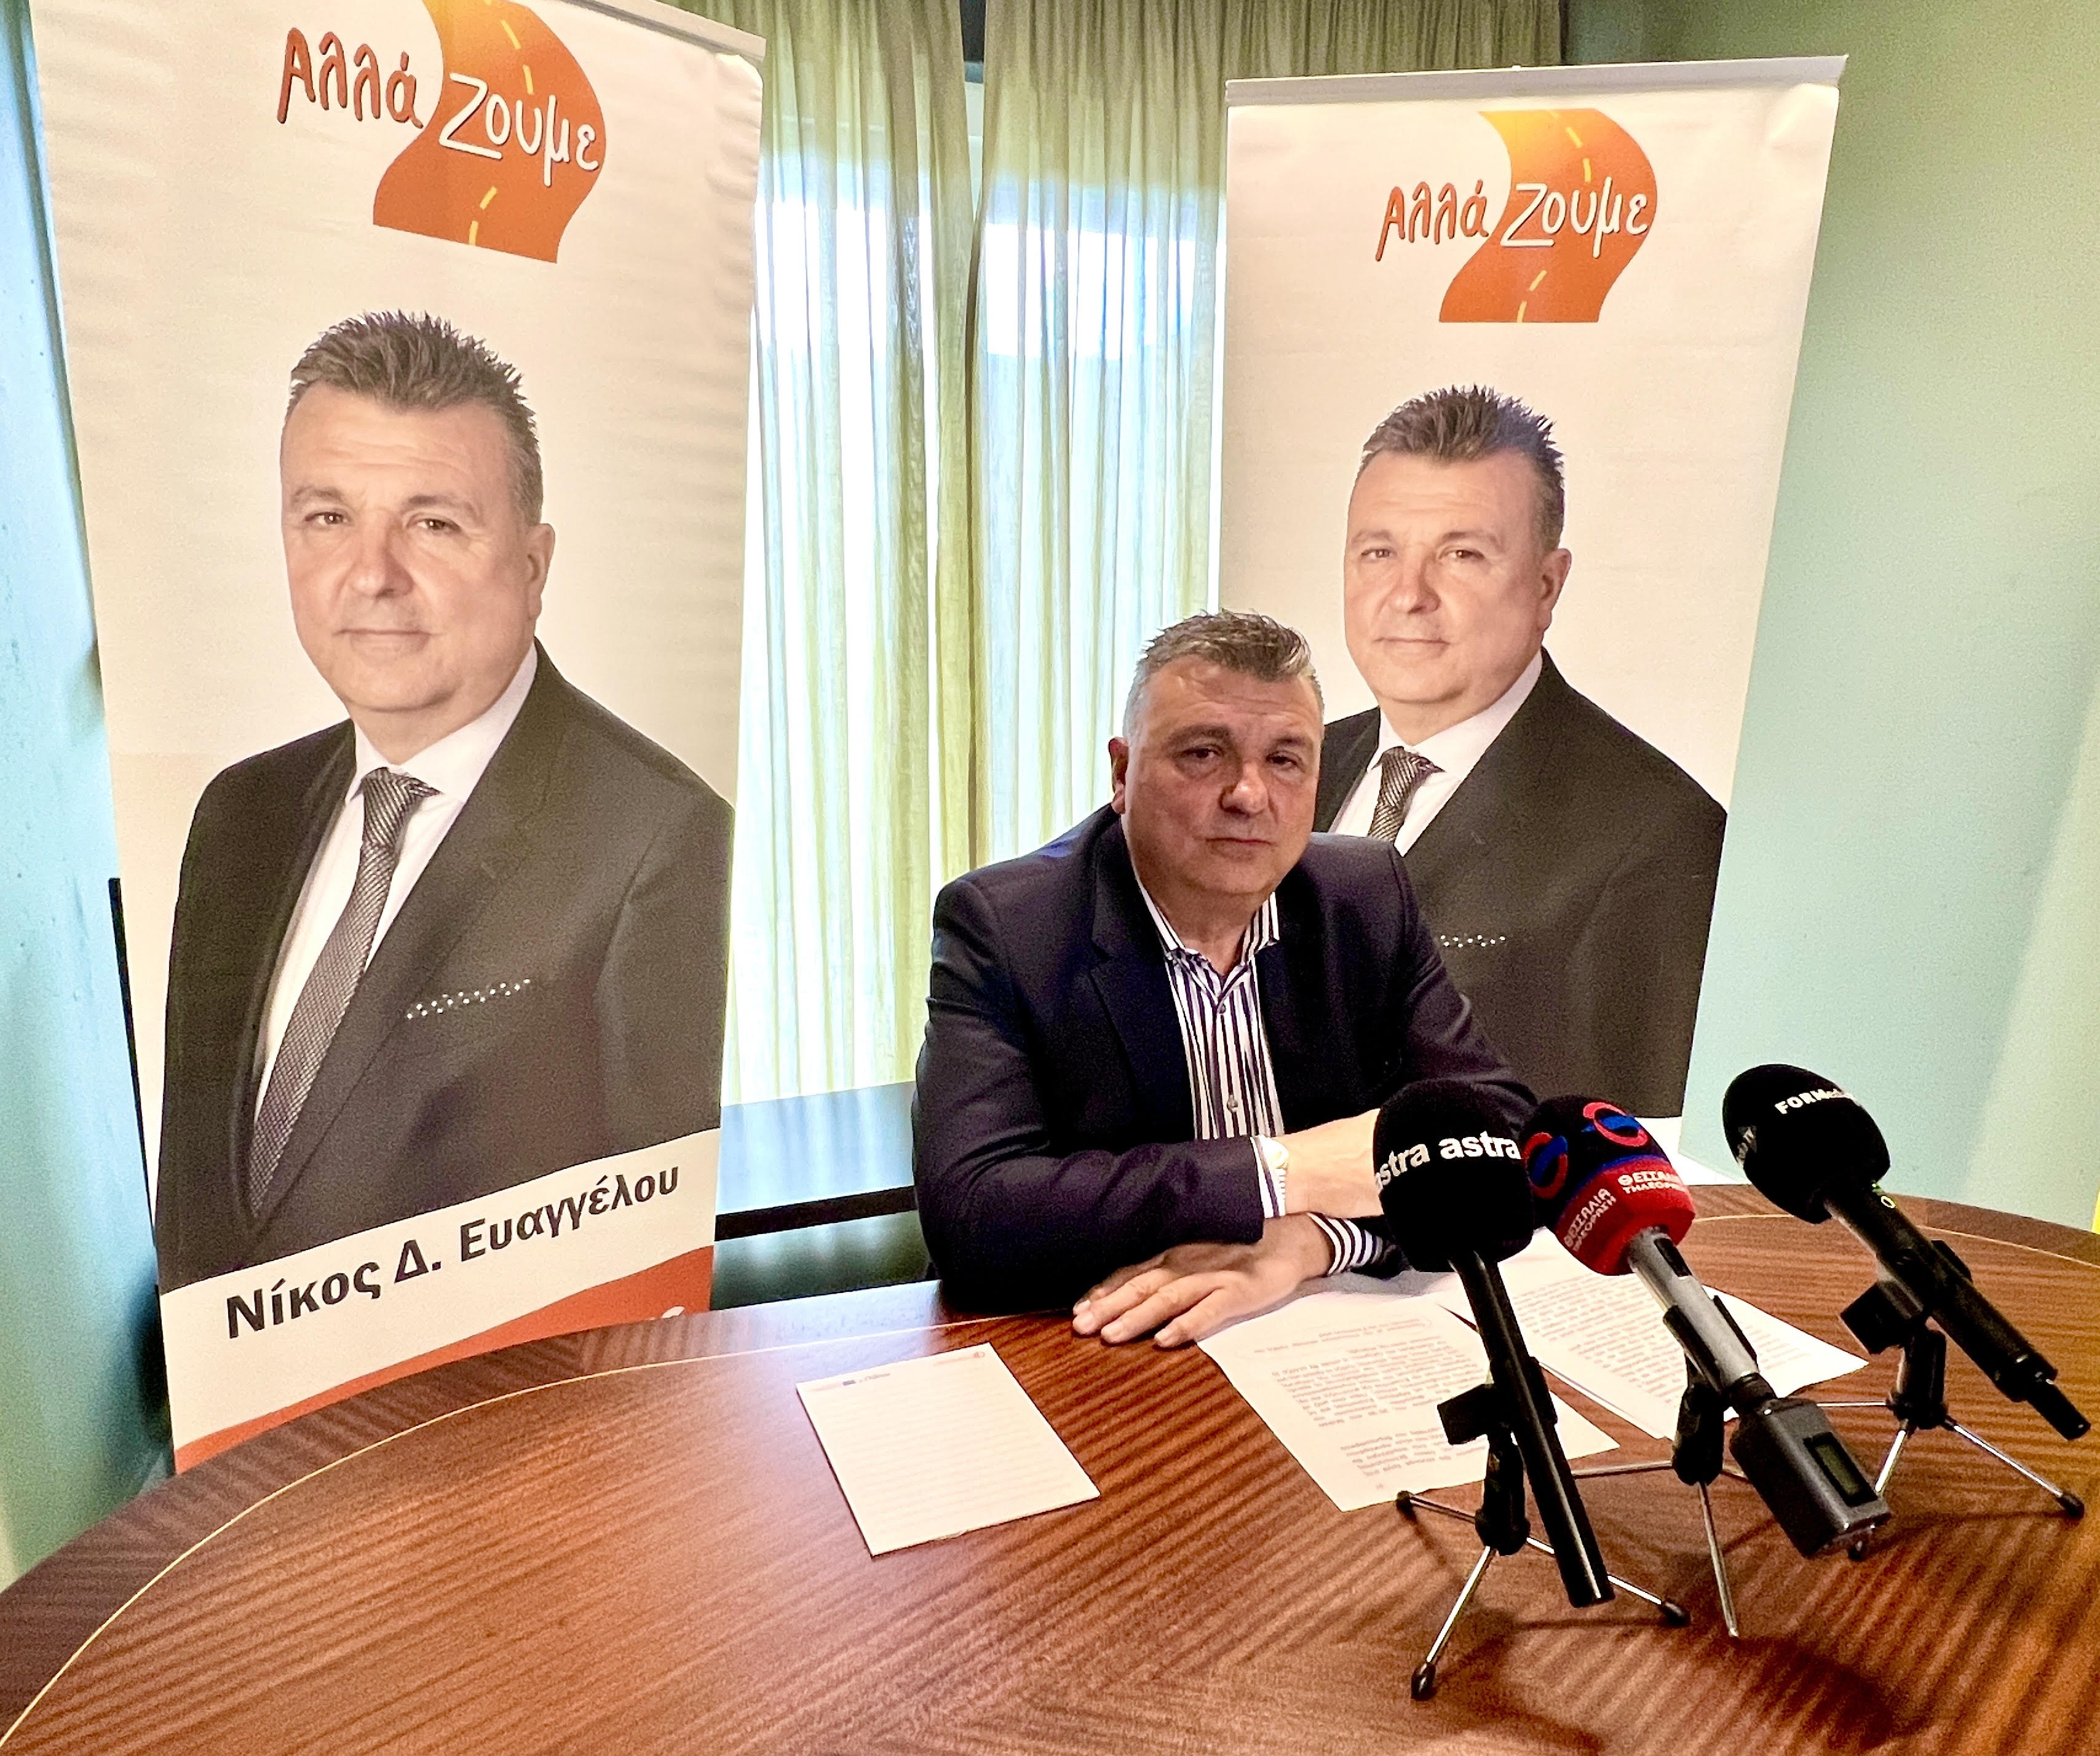 Ανακοινώνει την υποψηφιότητα του για το Δήμο Ελασσόνας ο Νίκος Ευαγγέλου